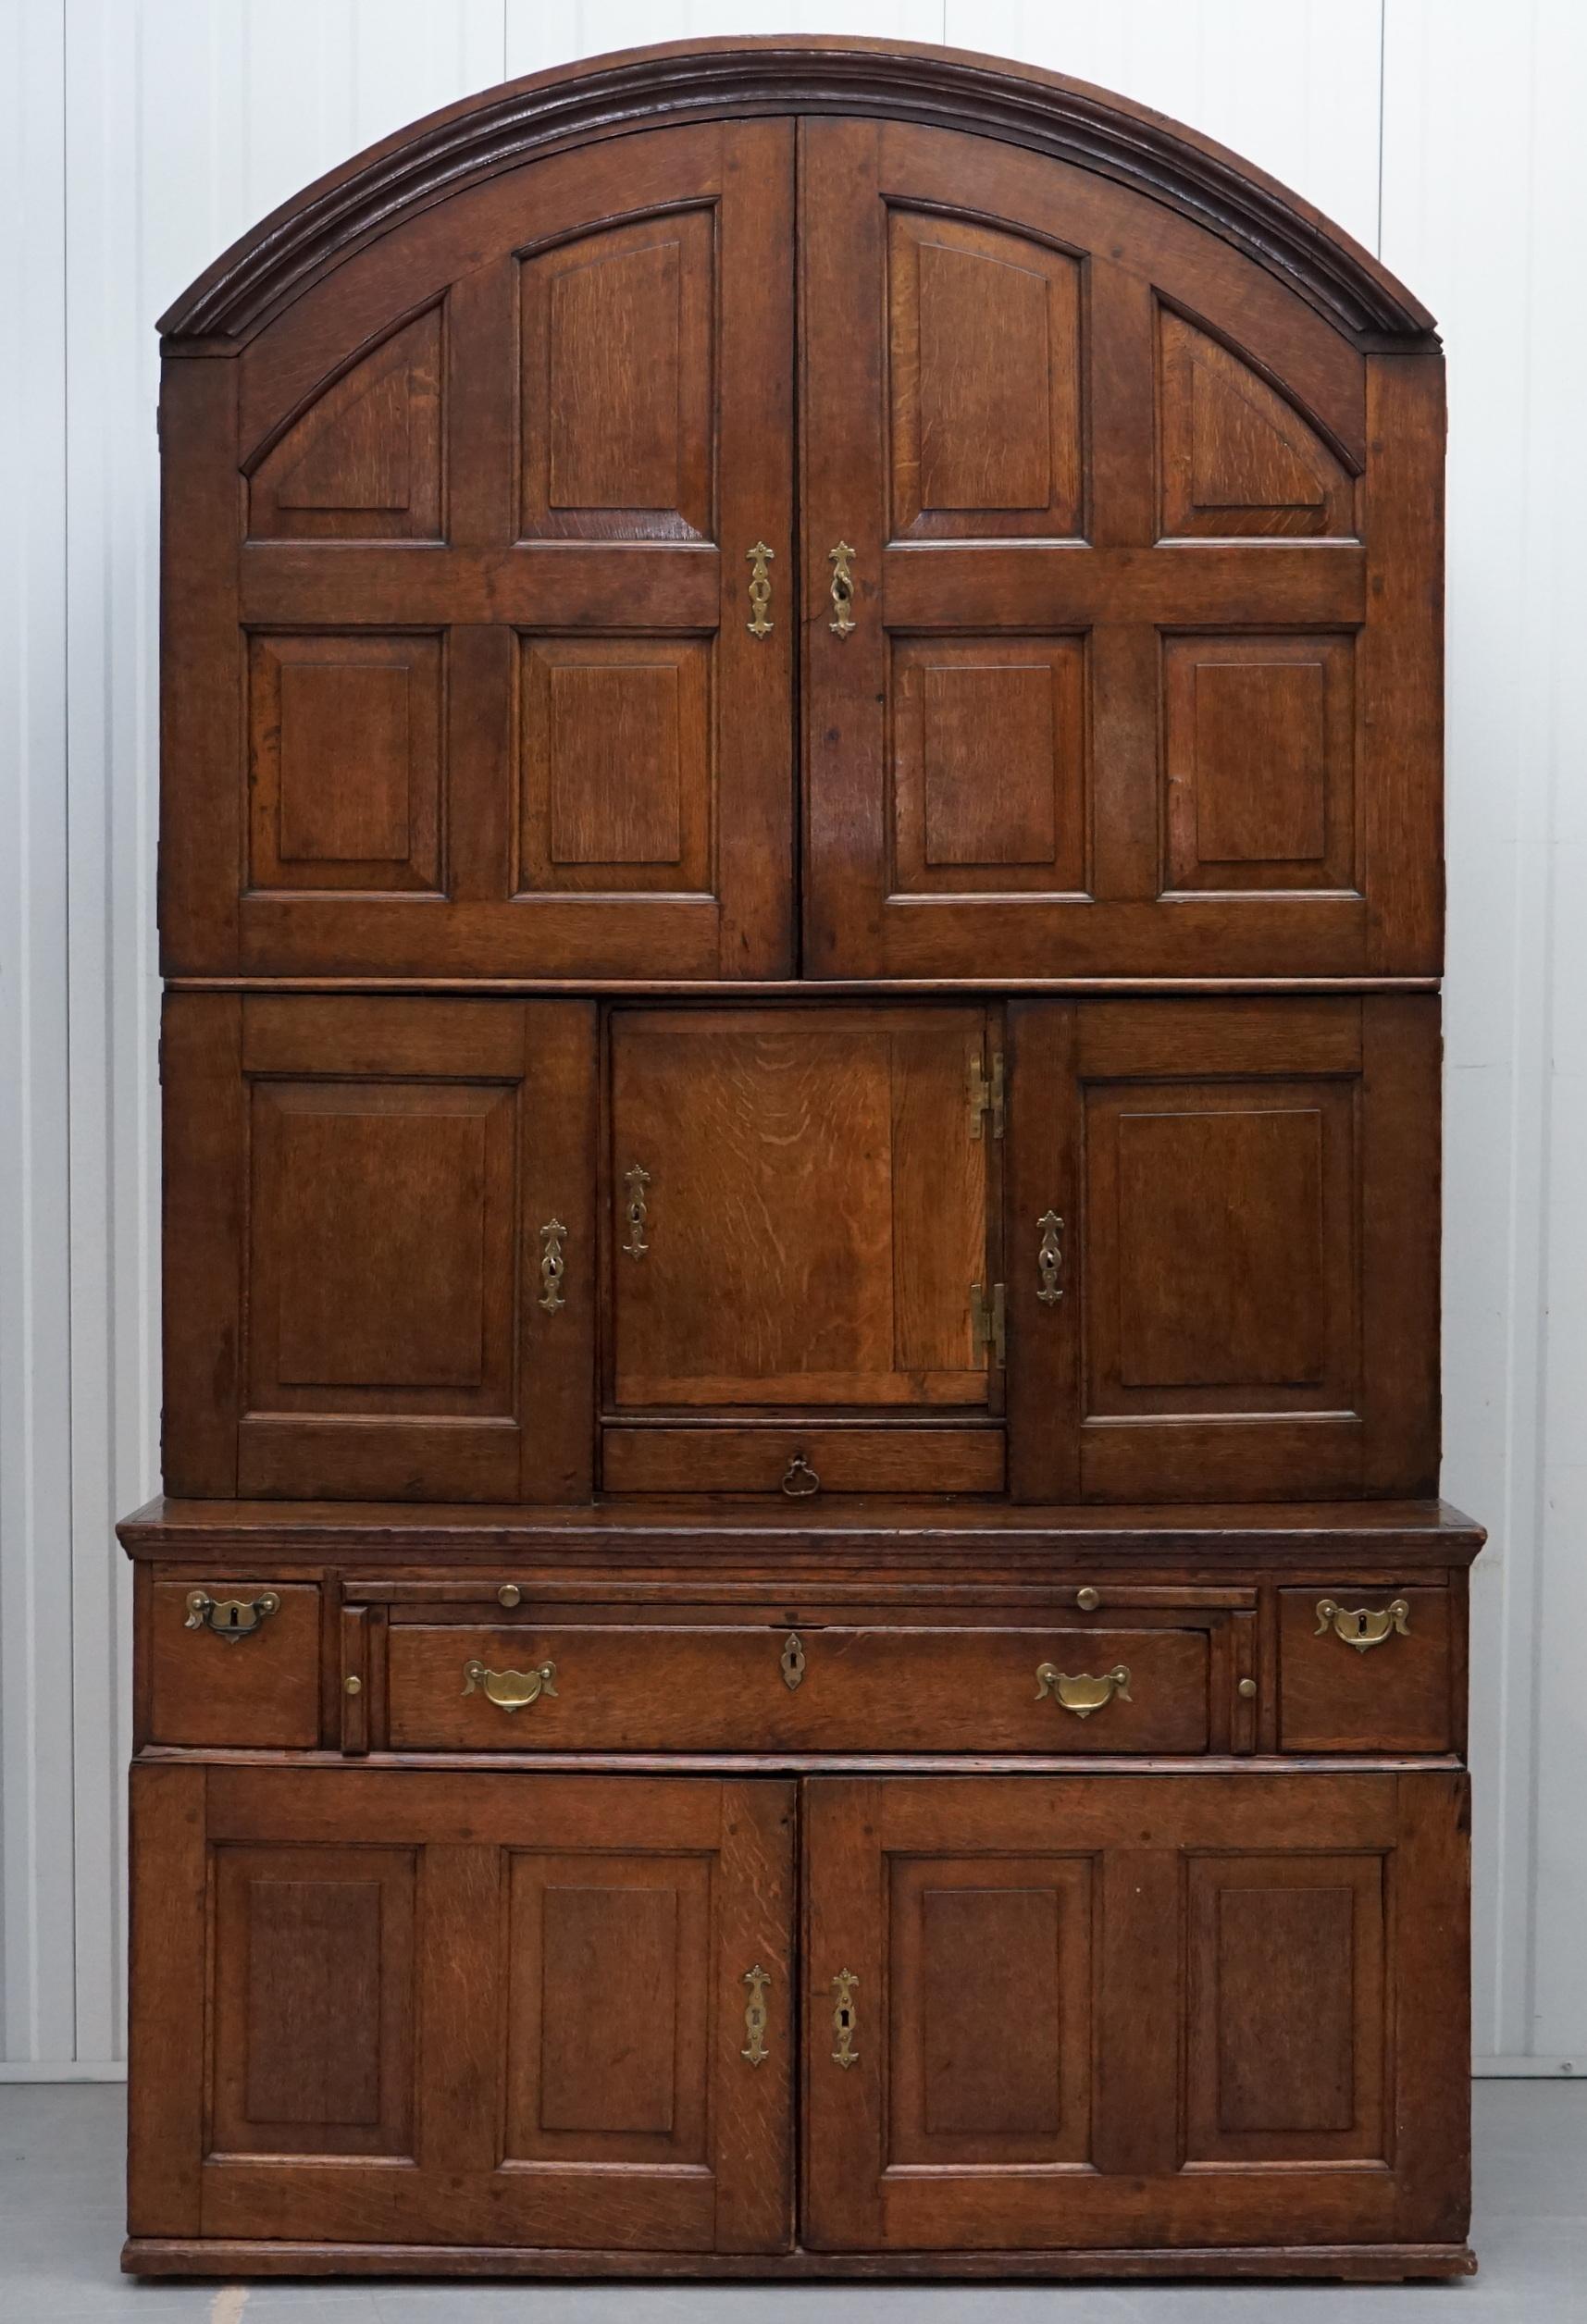 Nous sommes ravis d'offrir à la vente cette très rare armoire à panneaux en chêne cintrée vers 1740.

Une trouvaille très rare, entièrement d'origine avec des accessoires d'époque, quelques réparations anciennes, le retrait du bois, les fentes,